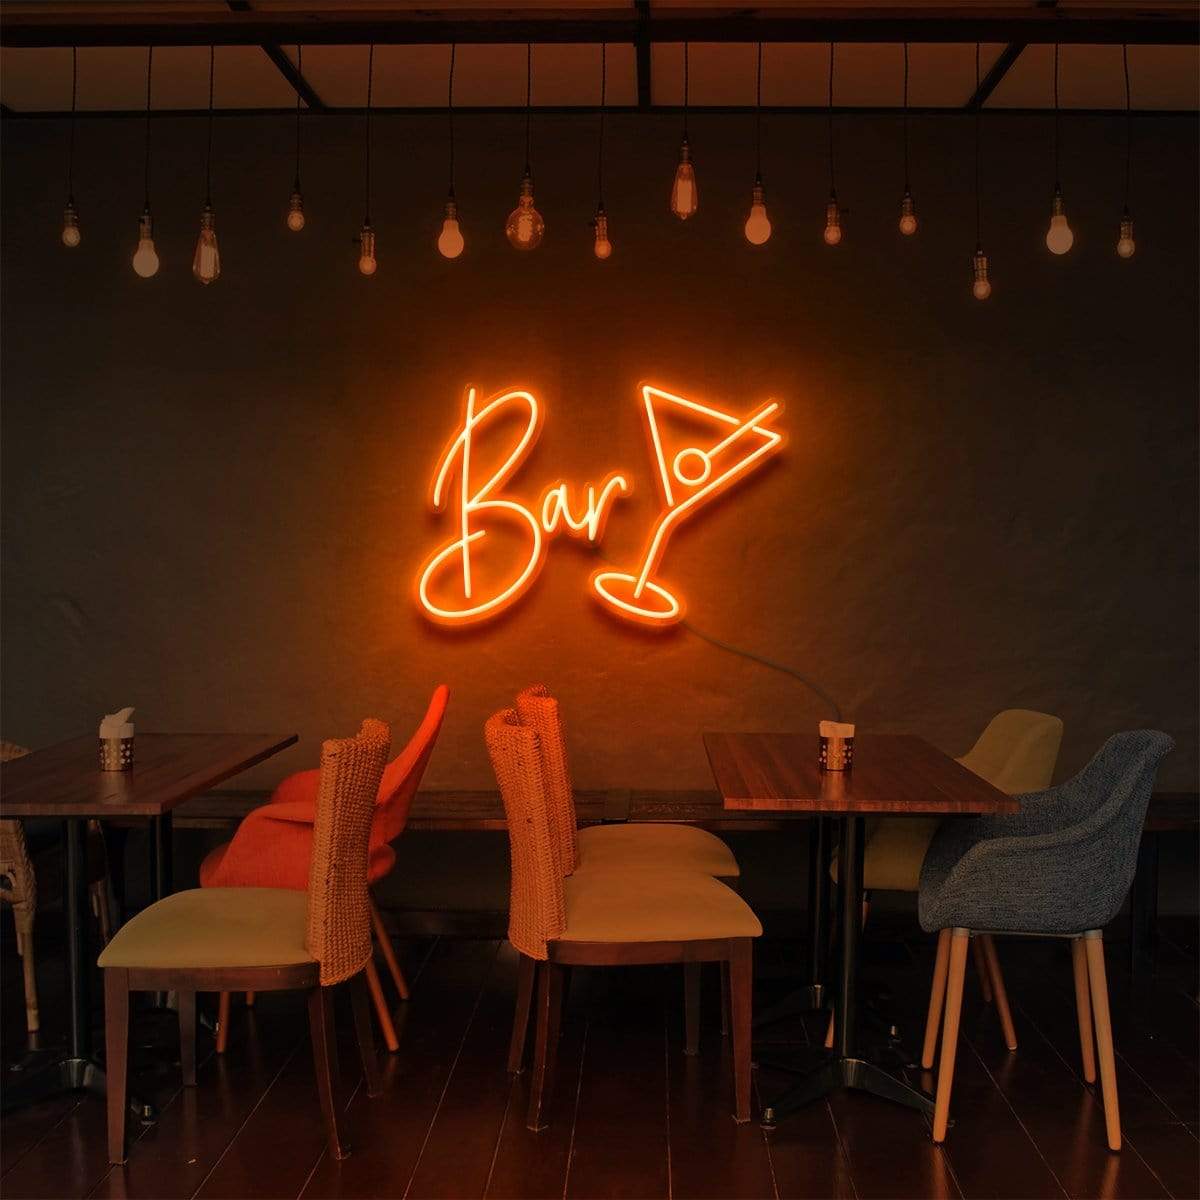 "Bar" Neon Sign for Bars & Restaurants 60cm (2ft) / Orange / LED Neon by Neon Icons